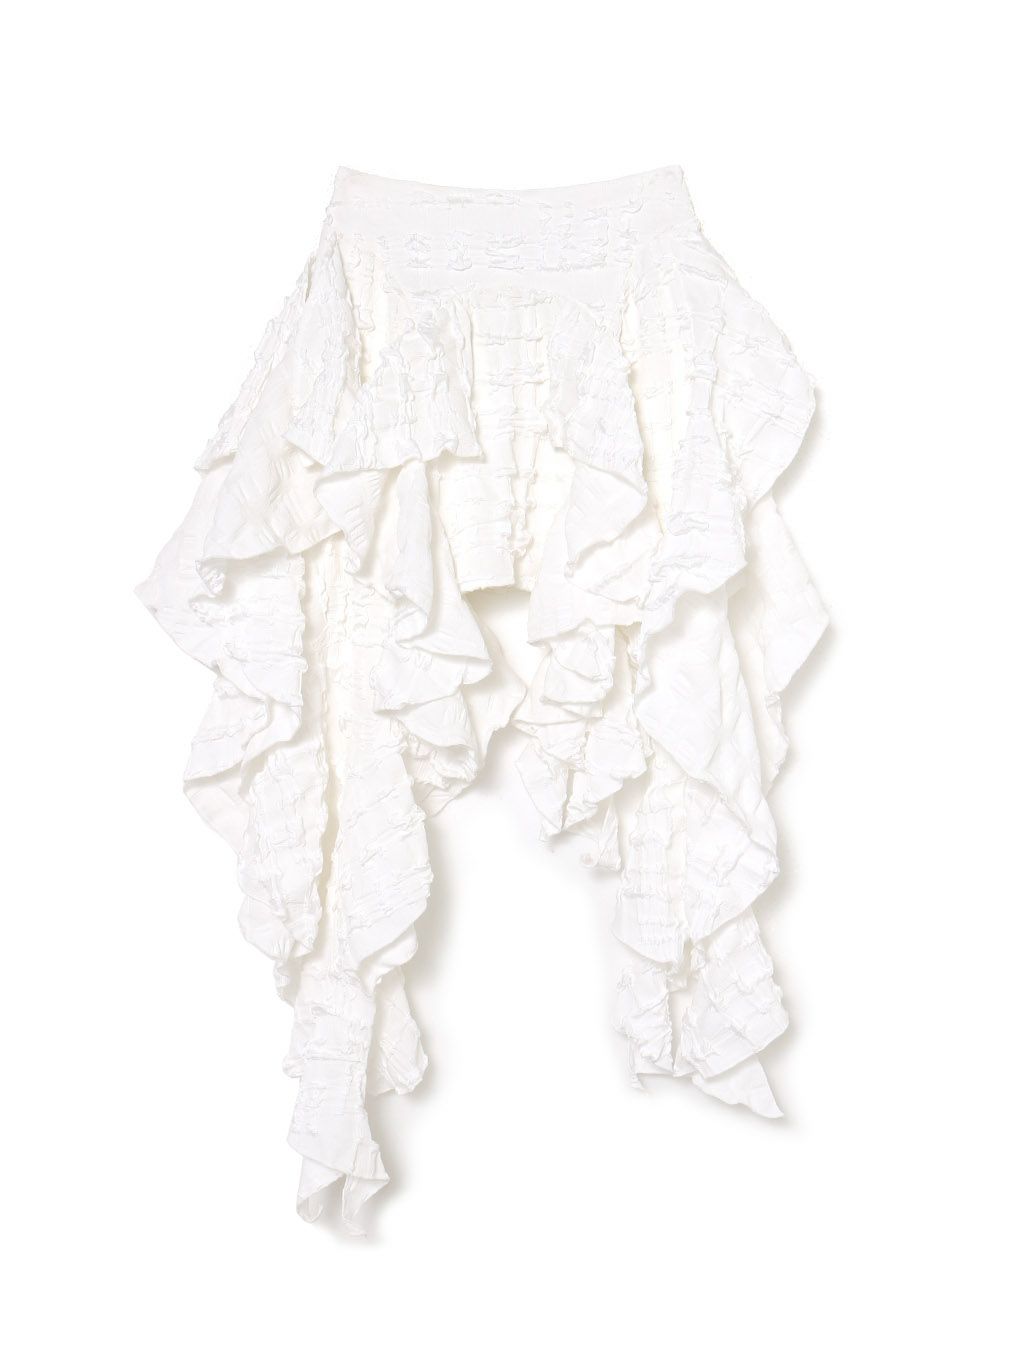 MELT THE LADY fleur mini skirt White31店頭にて購入